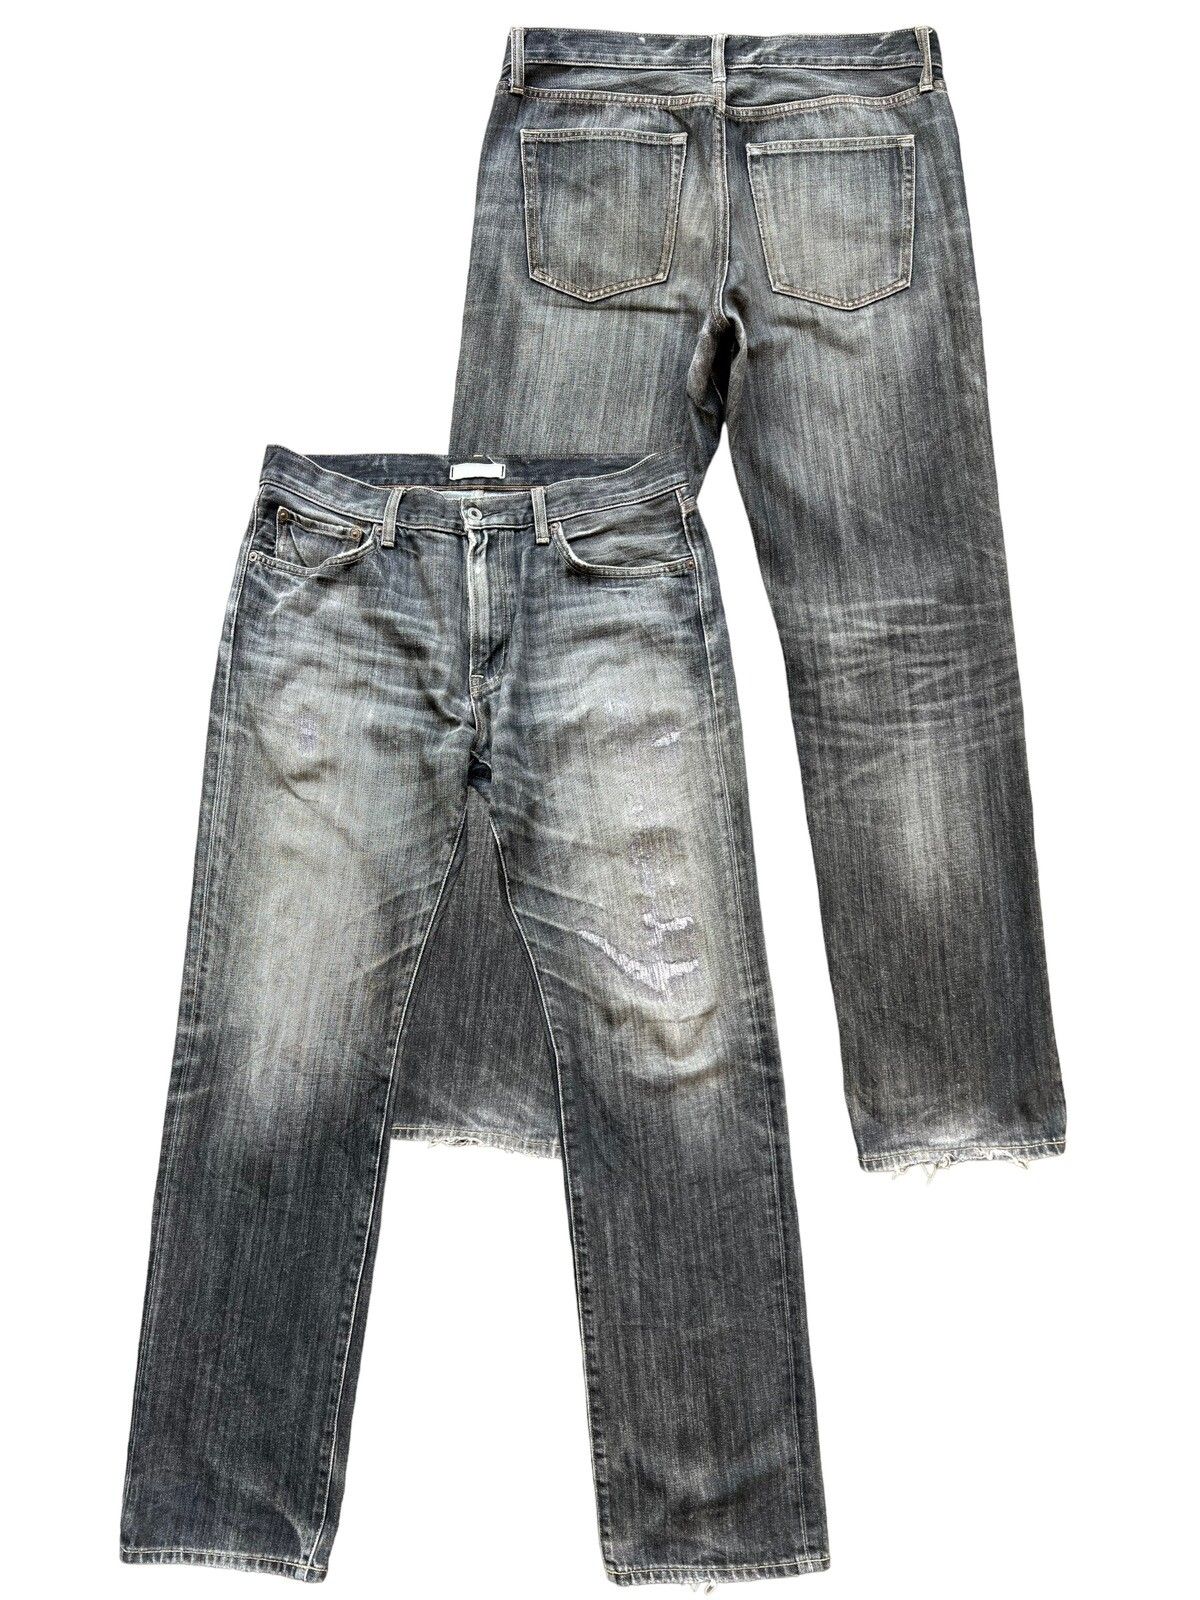 Uniqlo Uniqlo Jun Takahashi Low Rise Slim Jeans 35x33 | Grailed